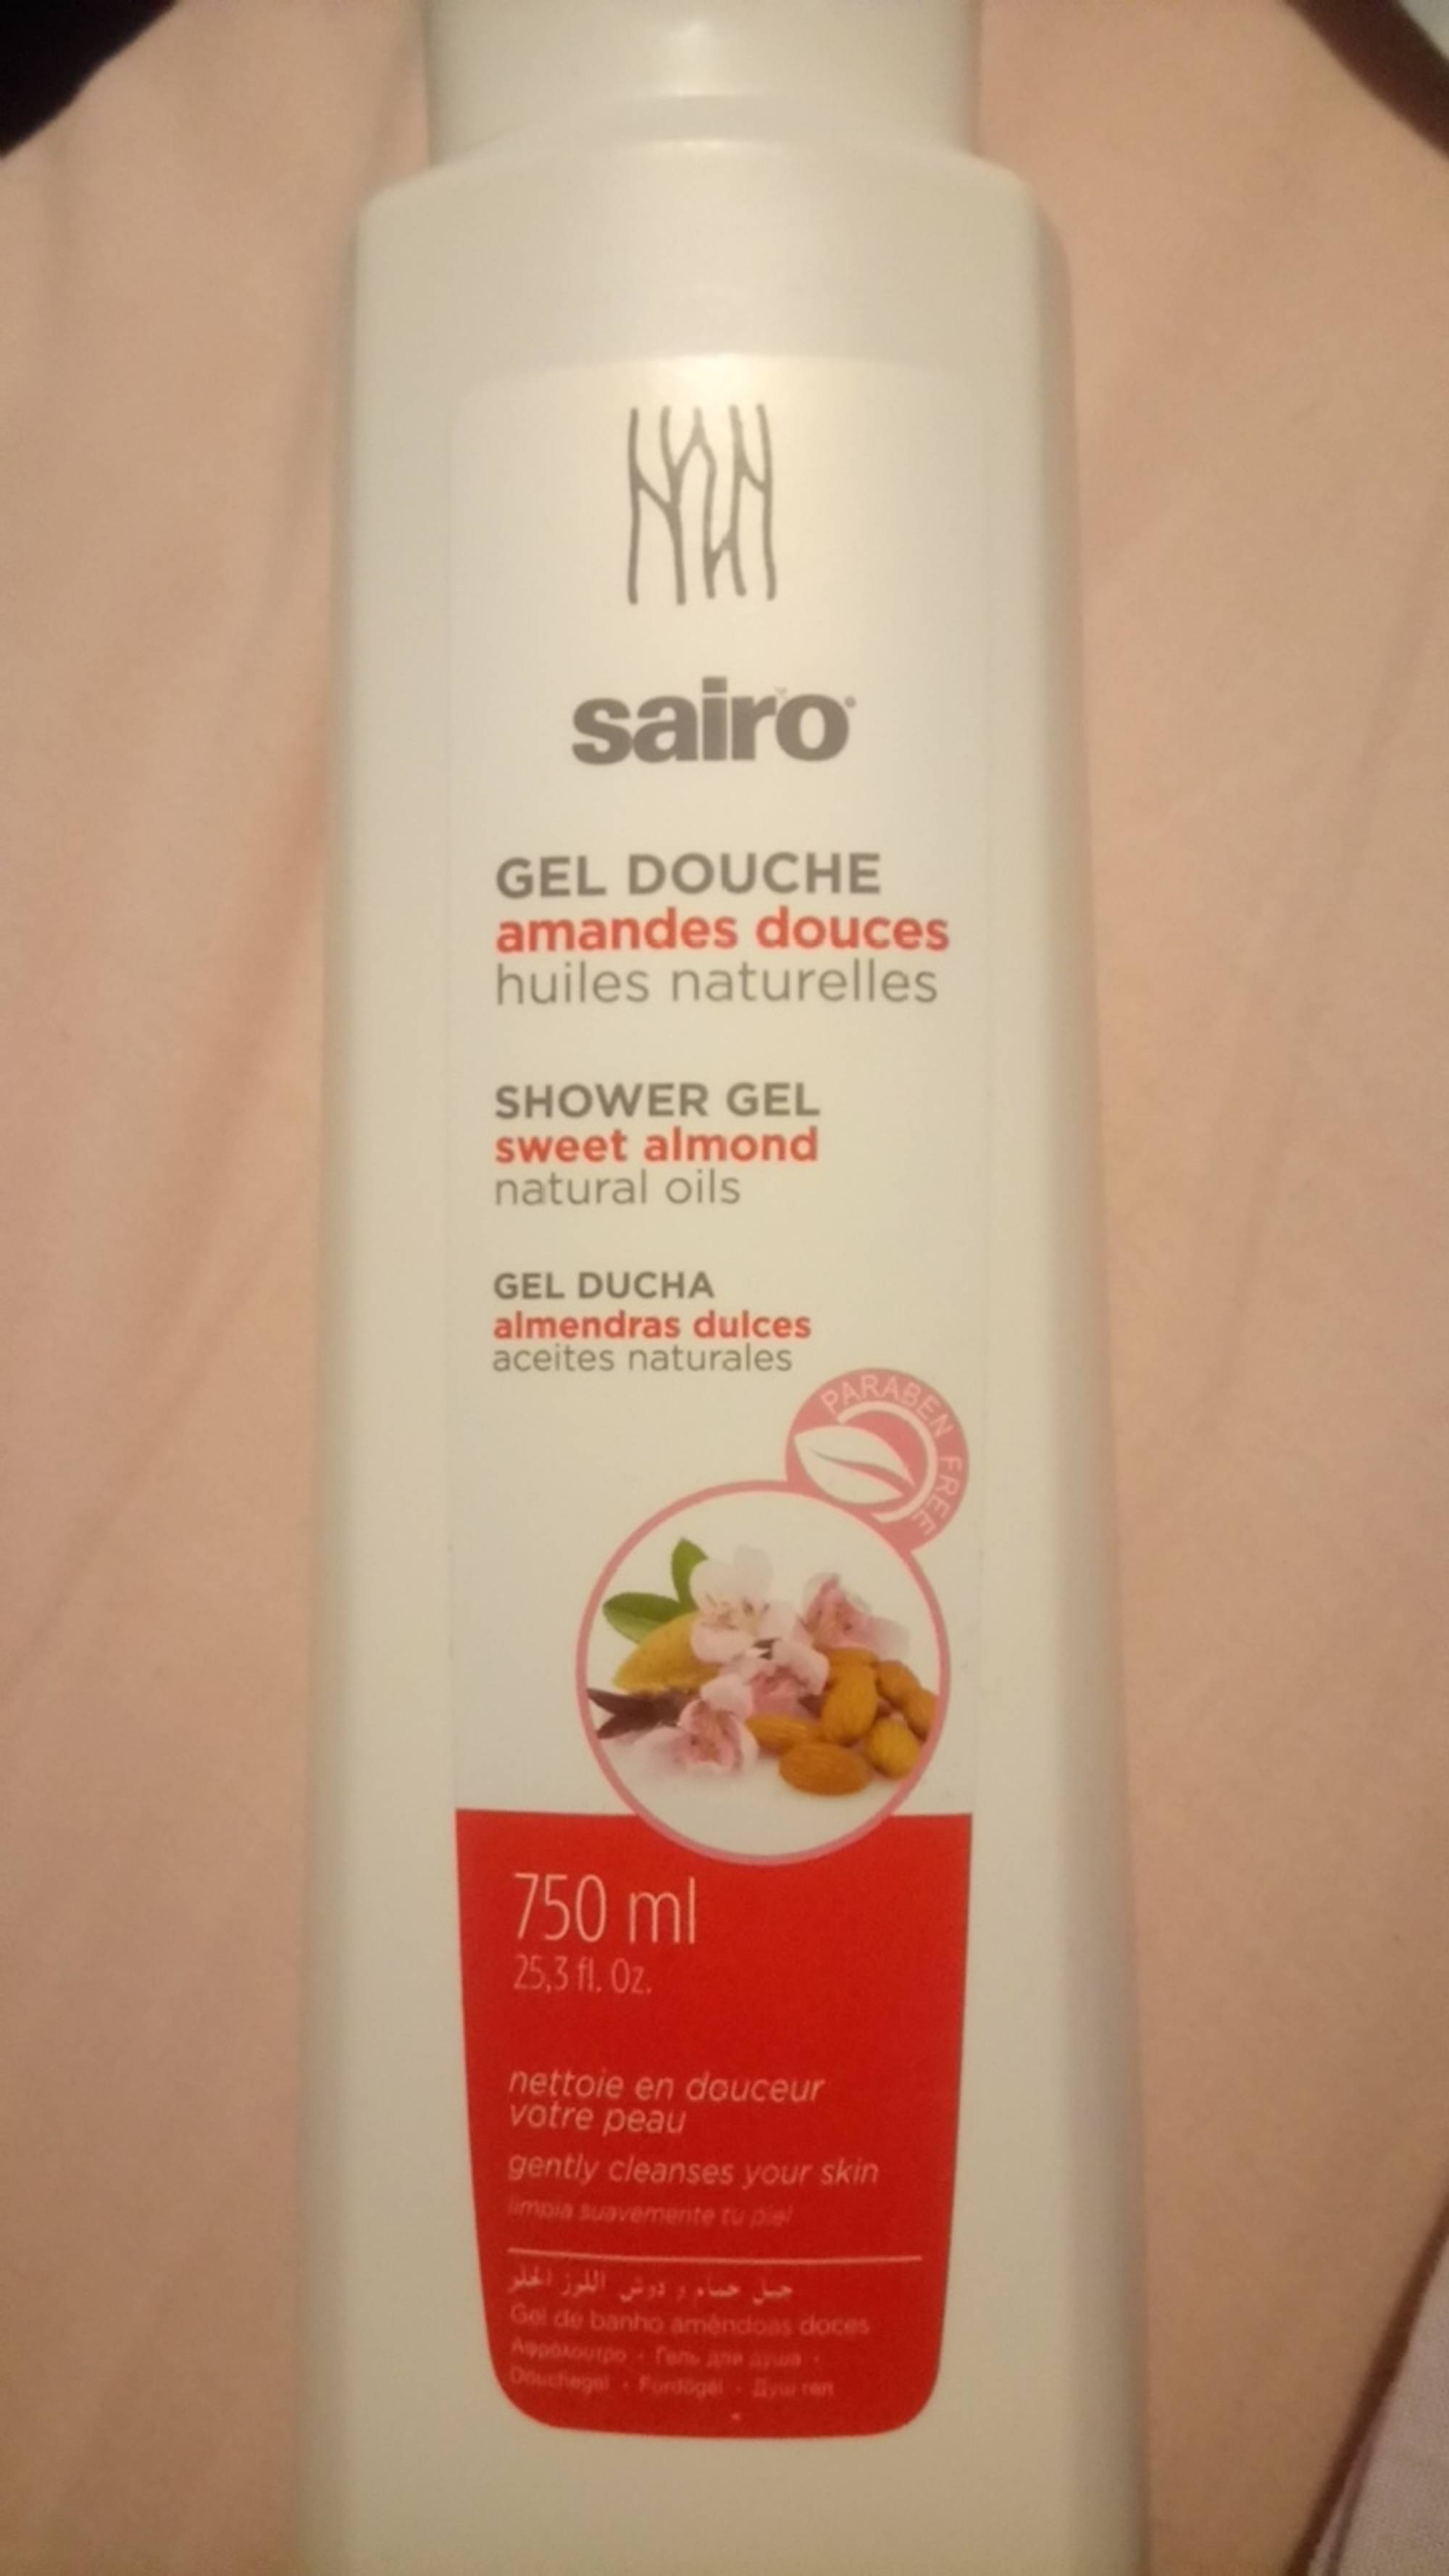 SAIRO - Gel douche nettoie en douceur votre peau